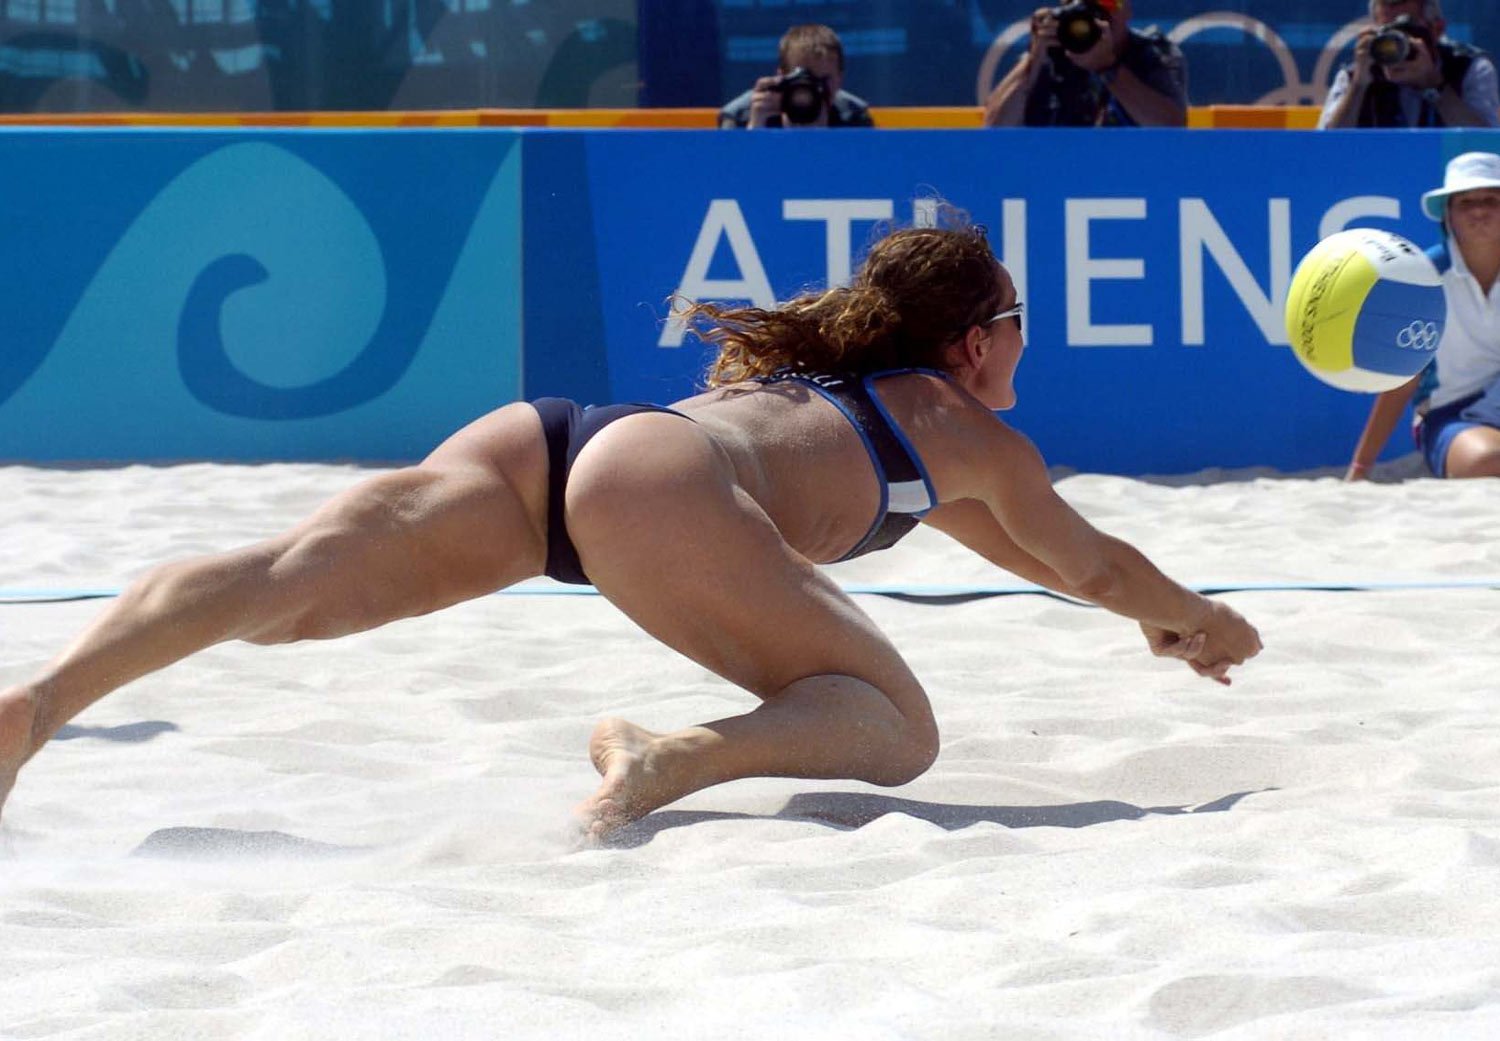 После пляжного волейбола девушку обязательно нужно трахнуть в жопу